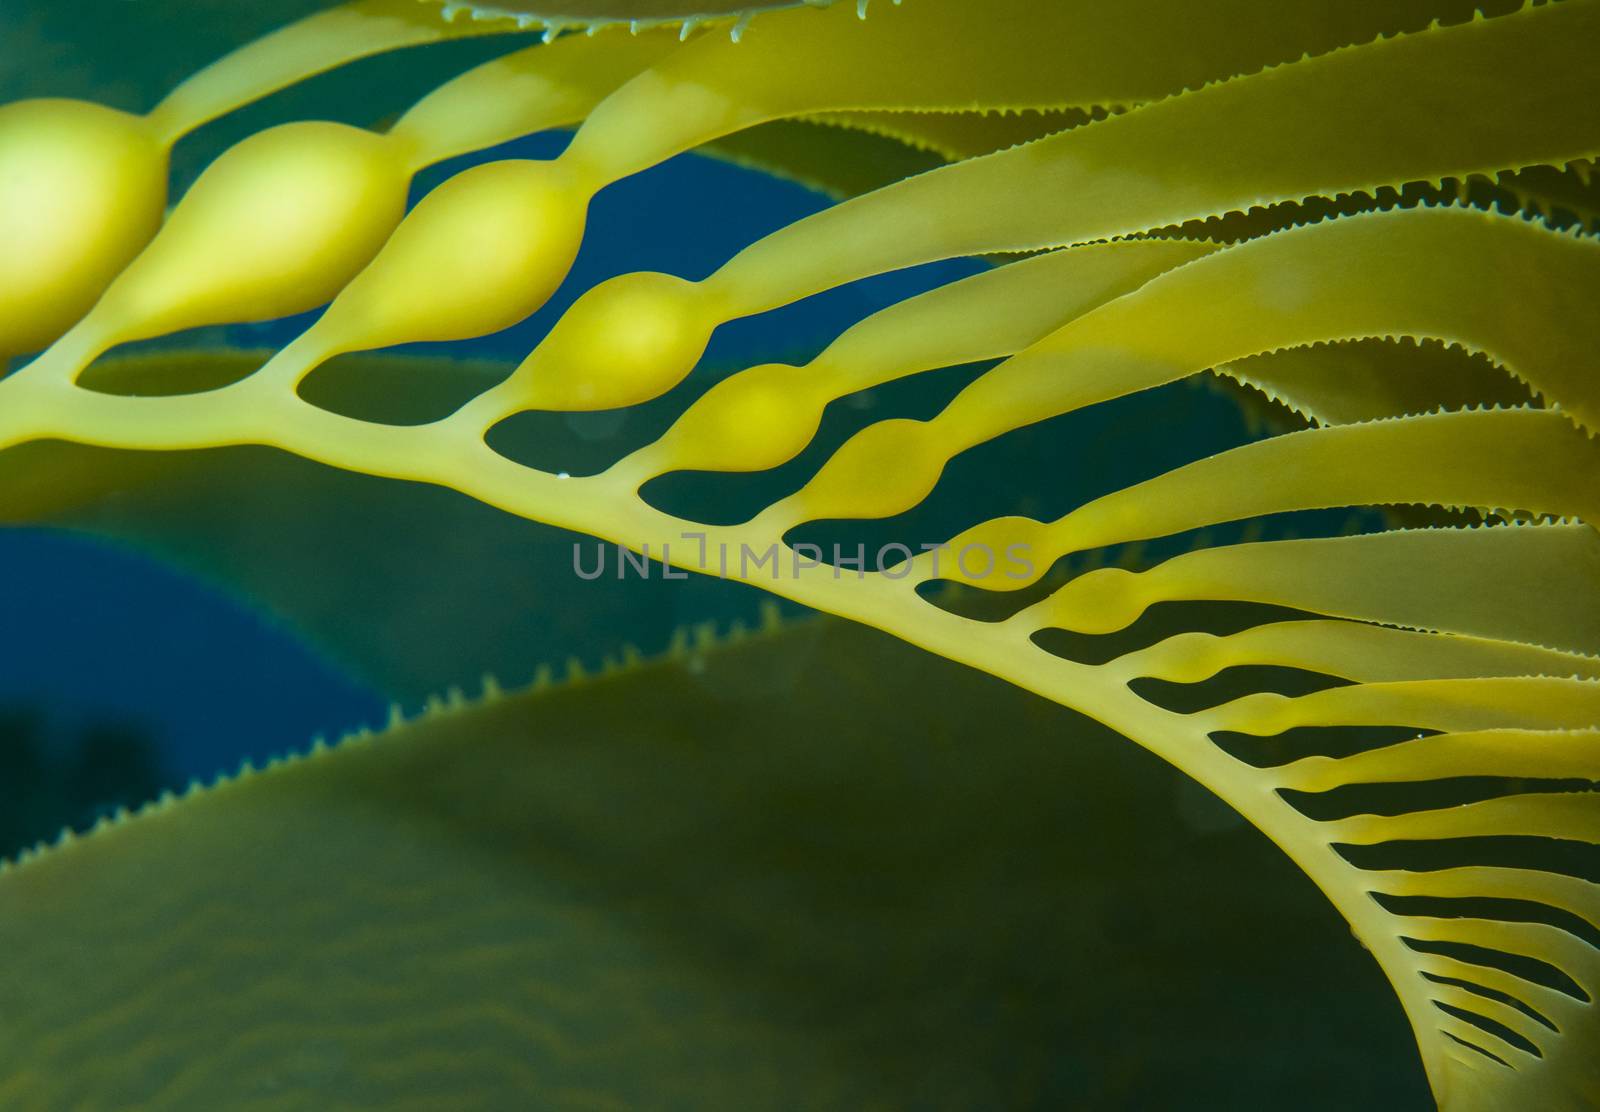 Kelp frond closeup of bladders by Njean